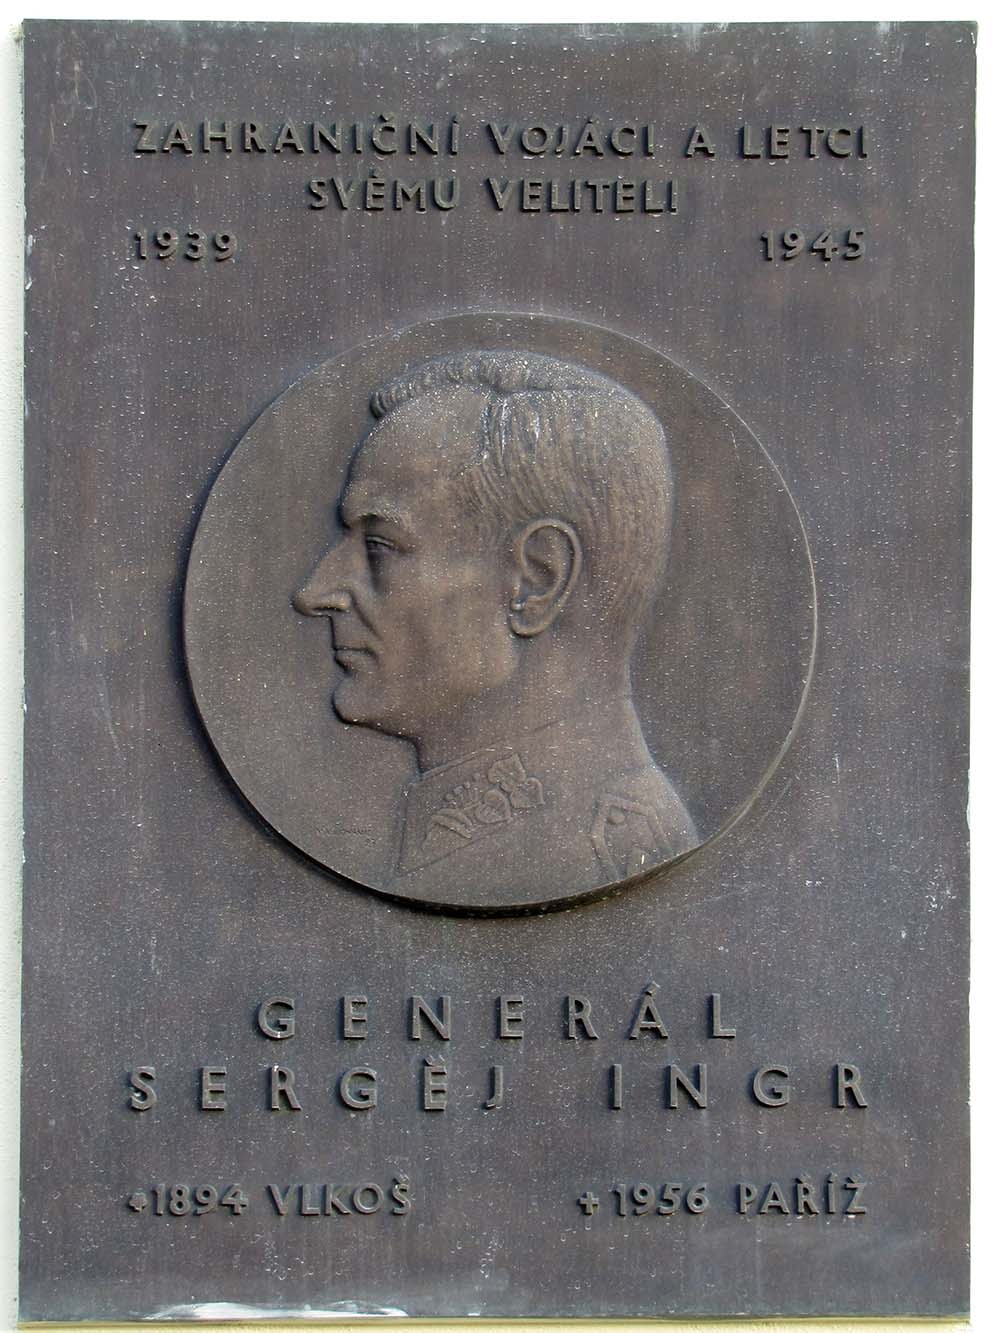 Memorial Sergej Ingr #1